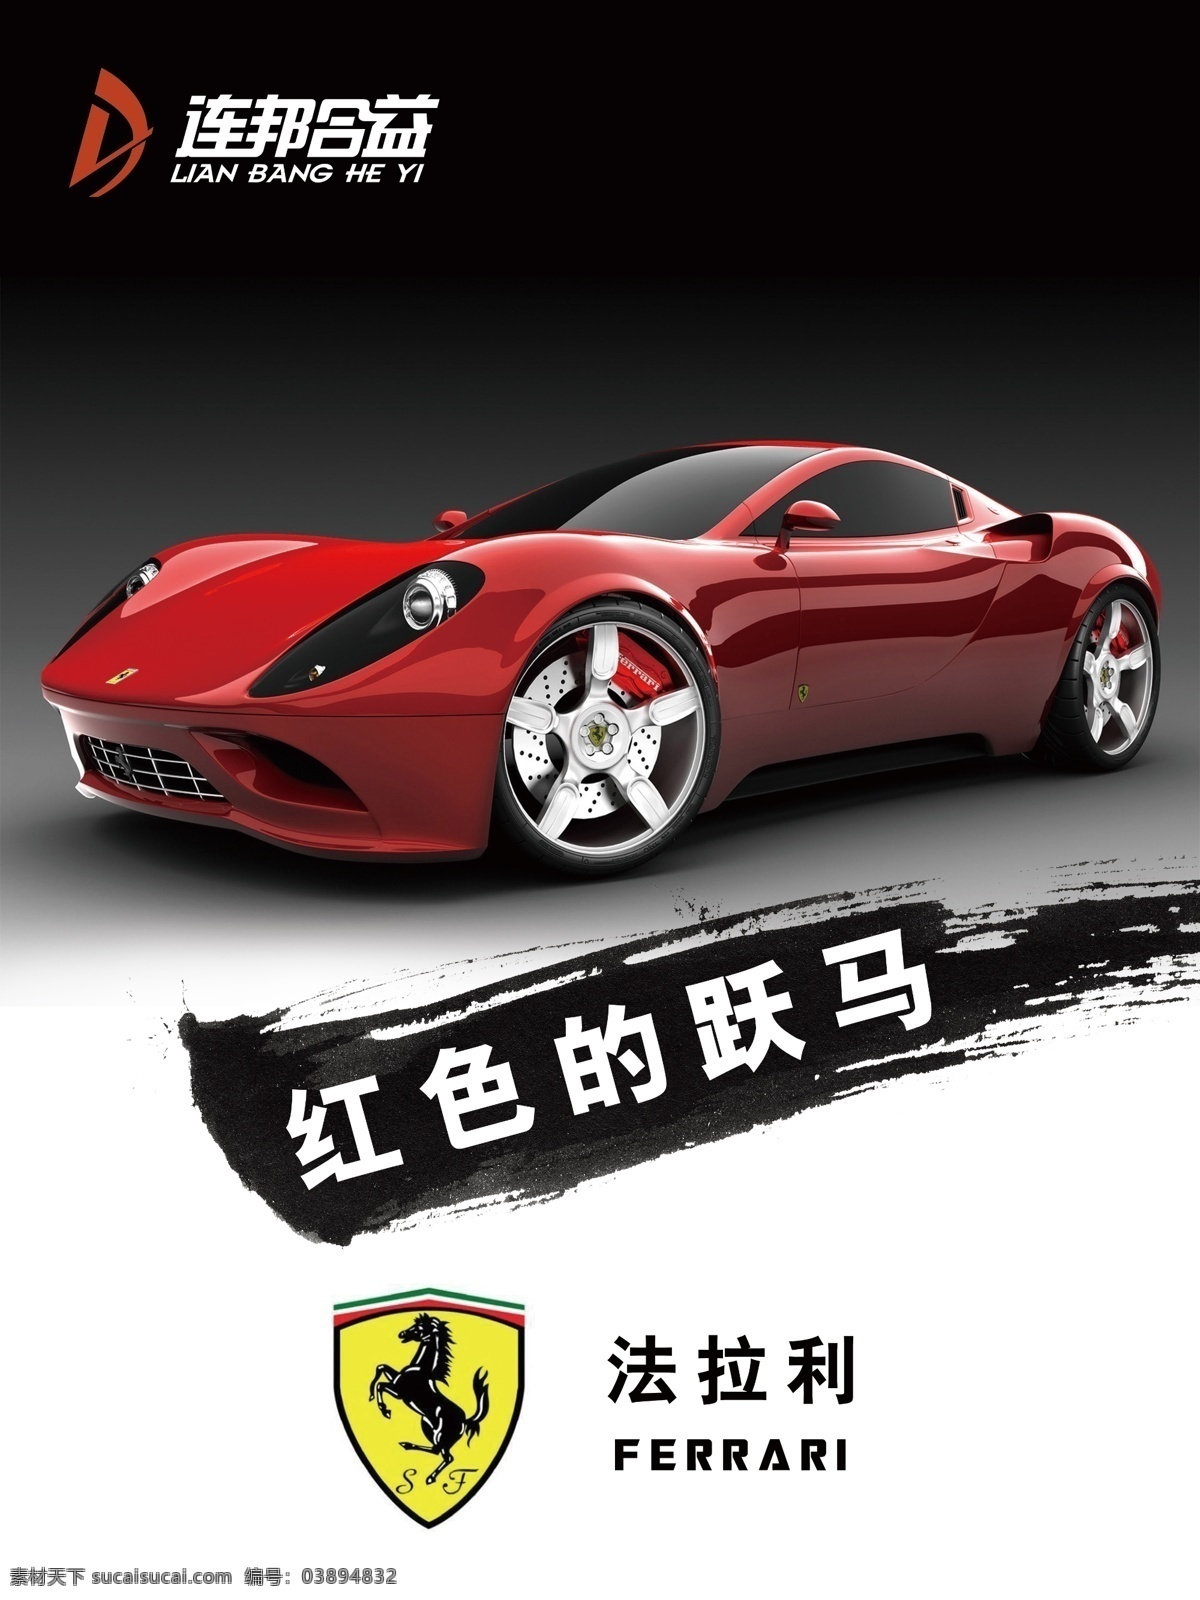 跑车 超级跑车 法拉利 名车 广告 汽车广告 海报 车标 写真画面 马 红色法拉利 广告设计模板 源文件